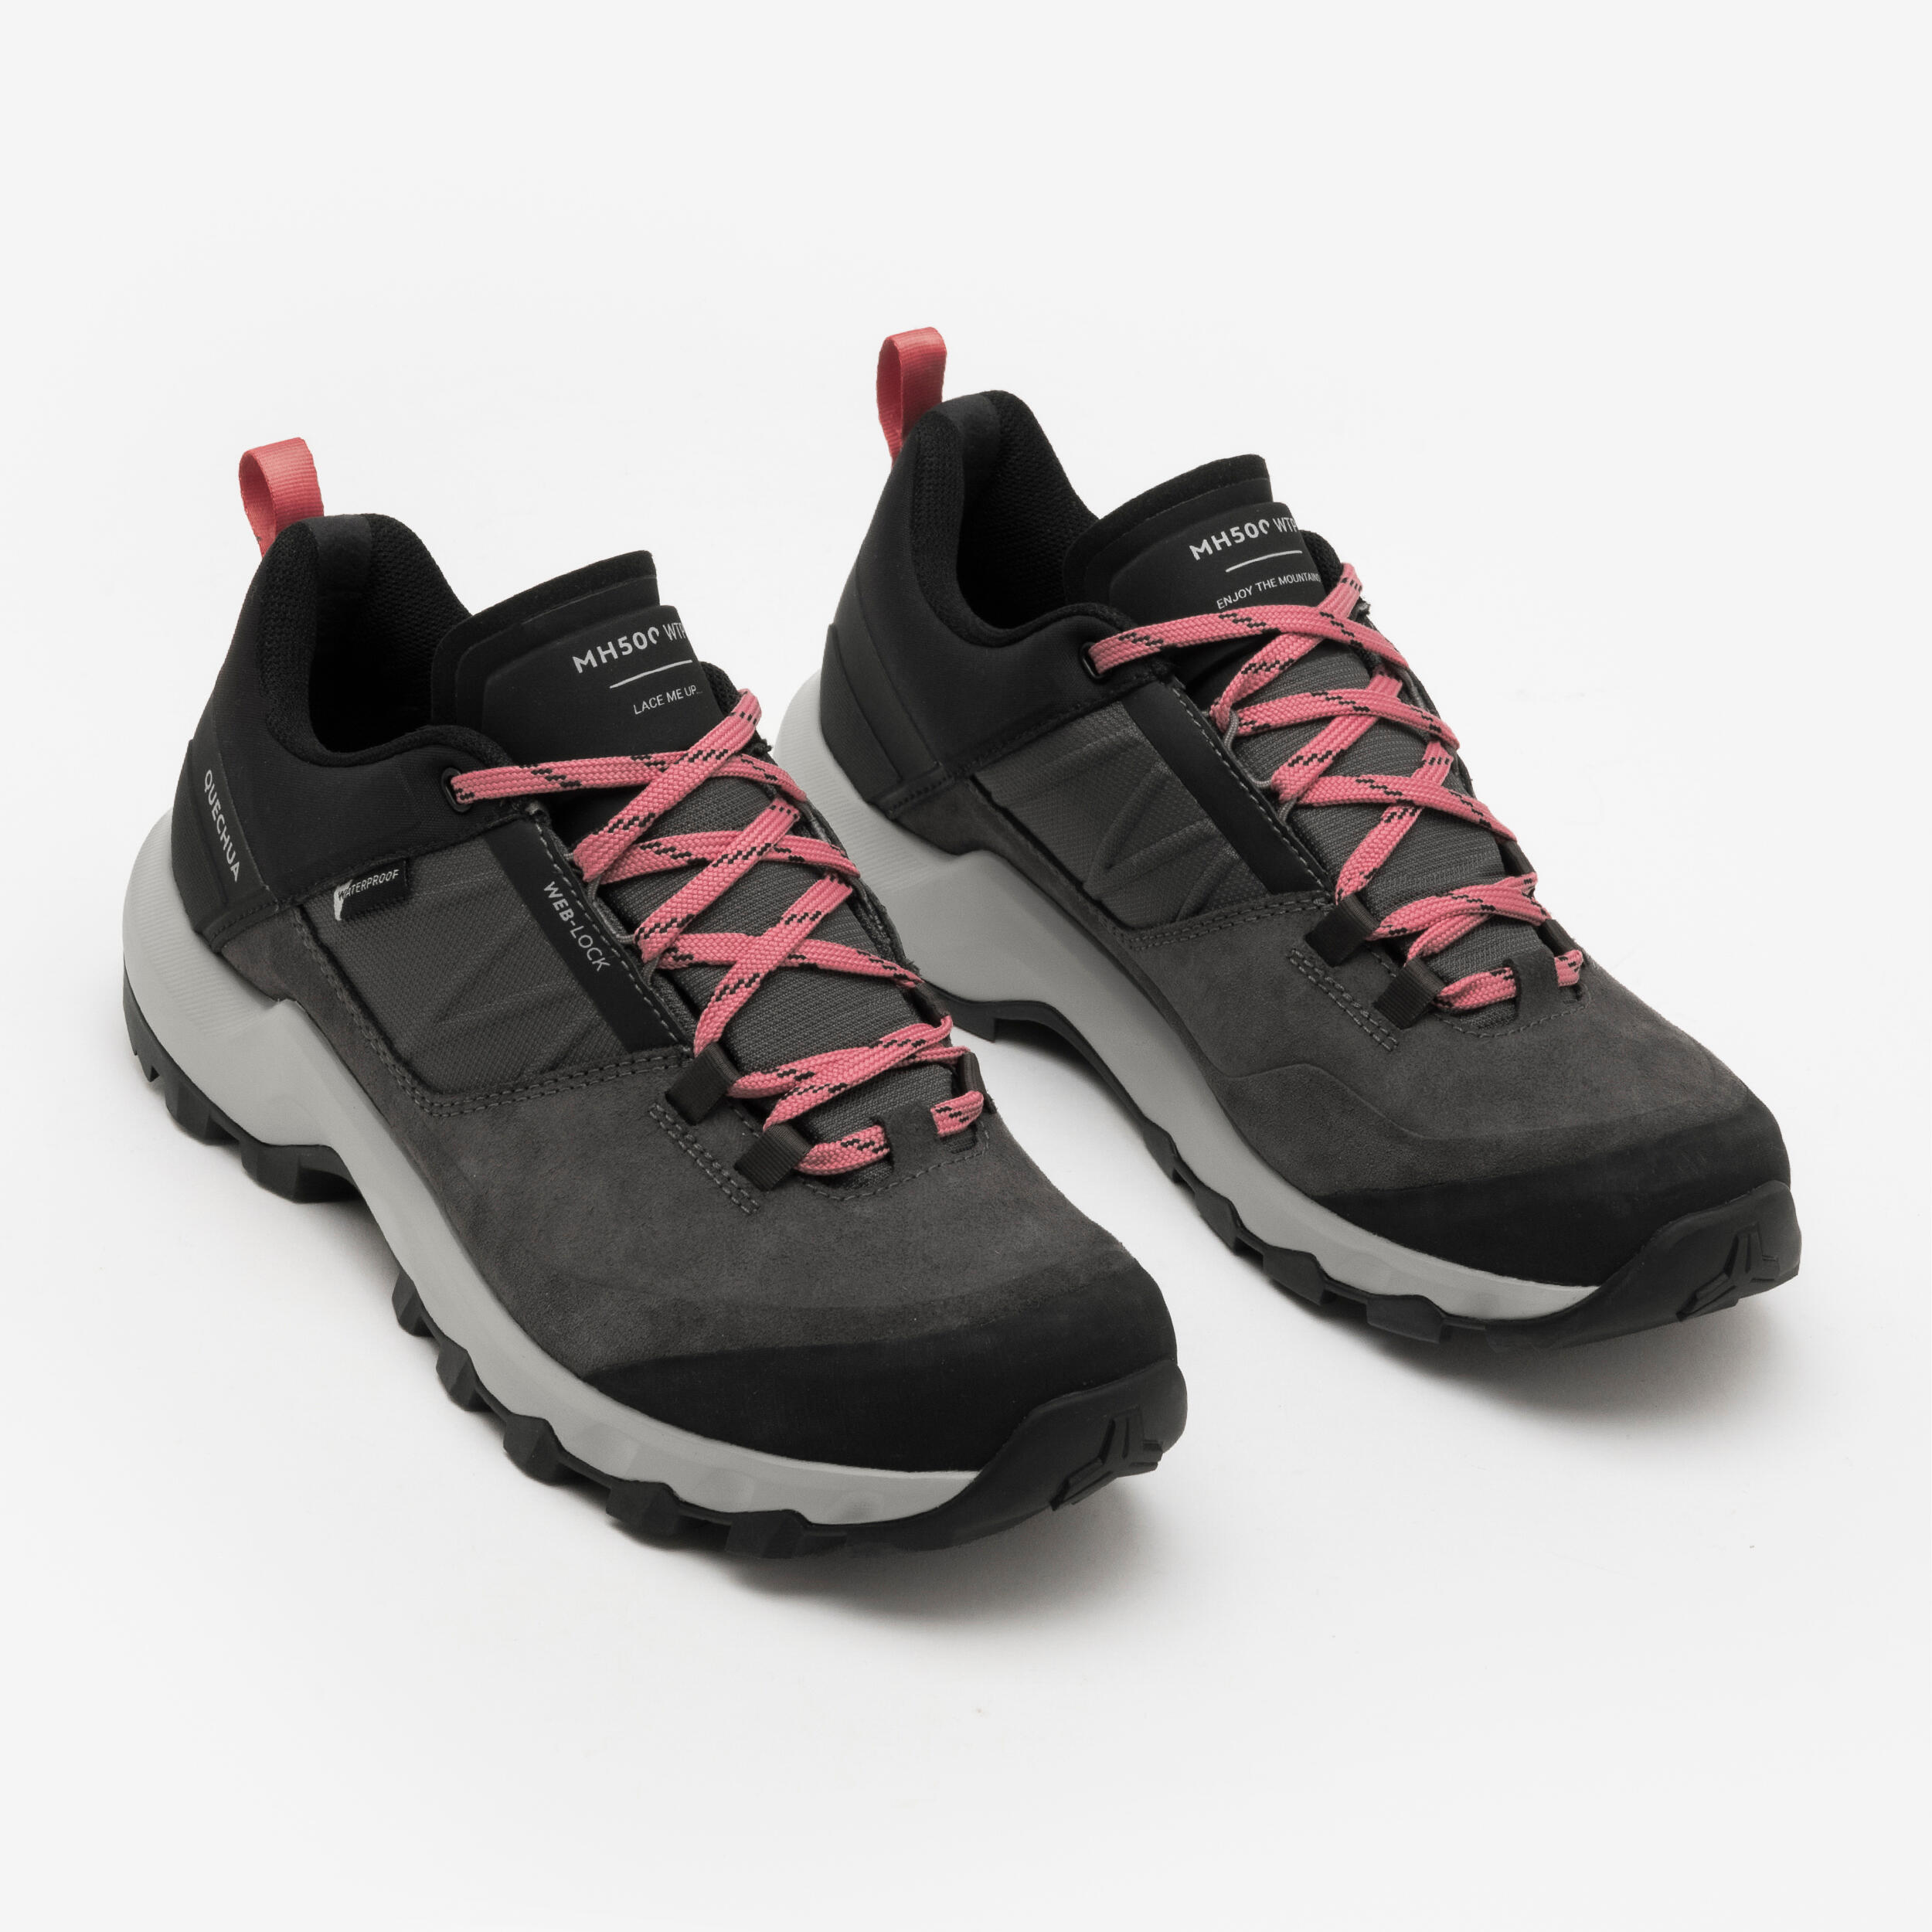 Women's waterproof mountain walking shoes - MH500 Grey 7/8